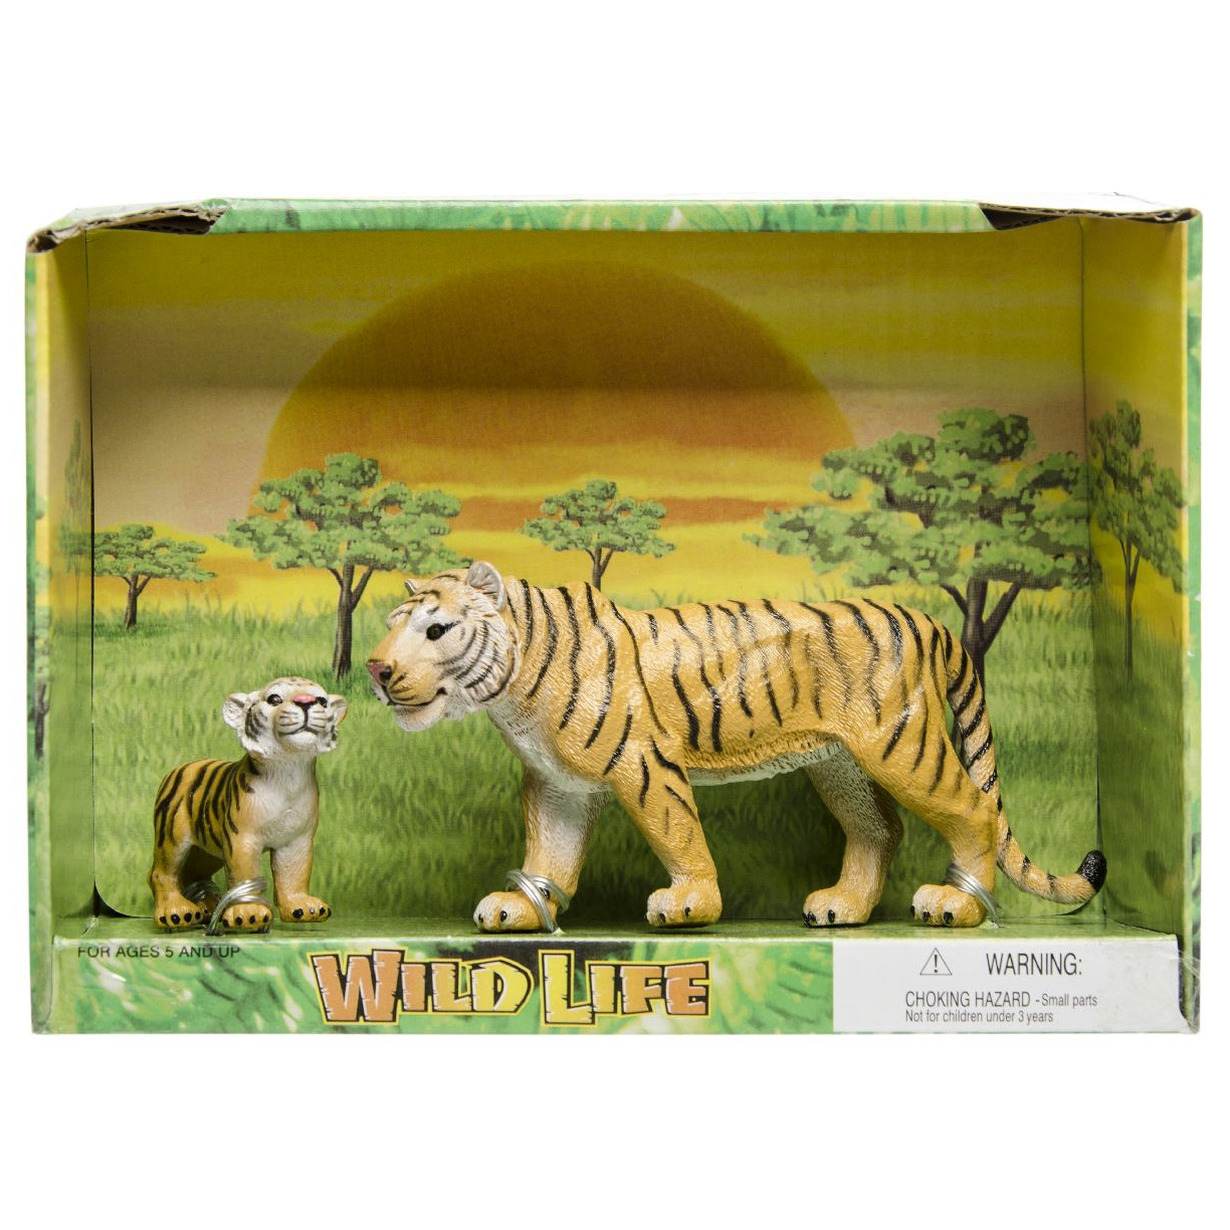 Plastic tijger met welp speelgoed voor kinderen